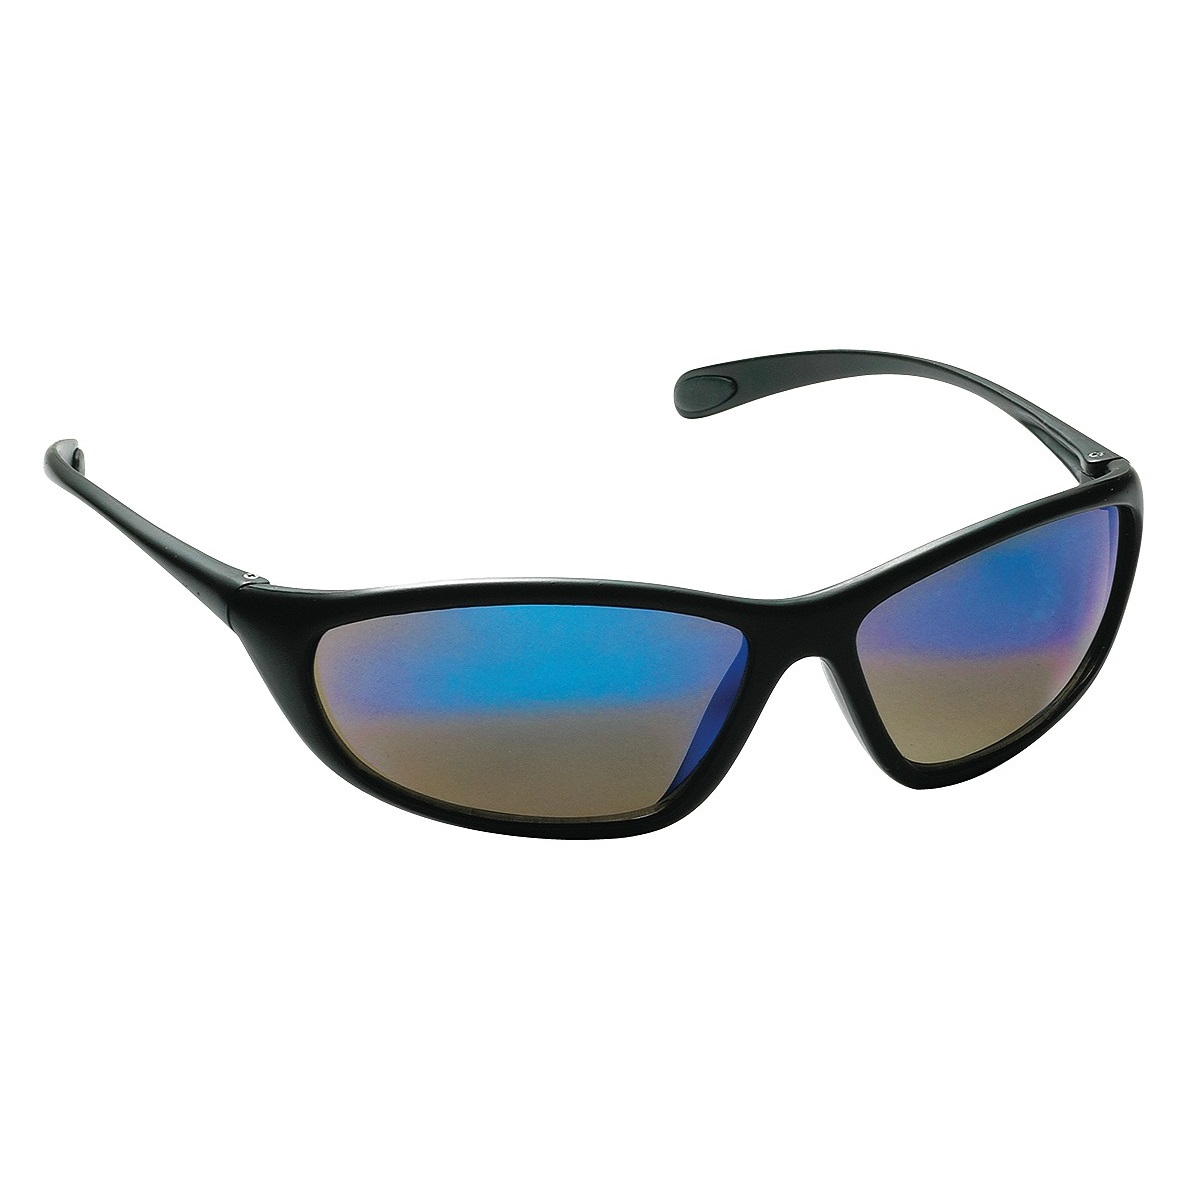 Spyder Safety Glasses, Black Frame, Blue Mirror Lens